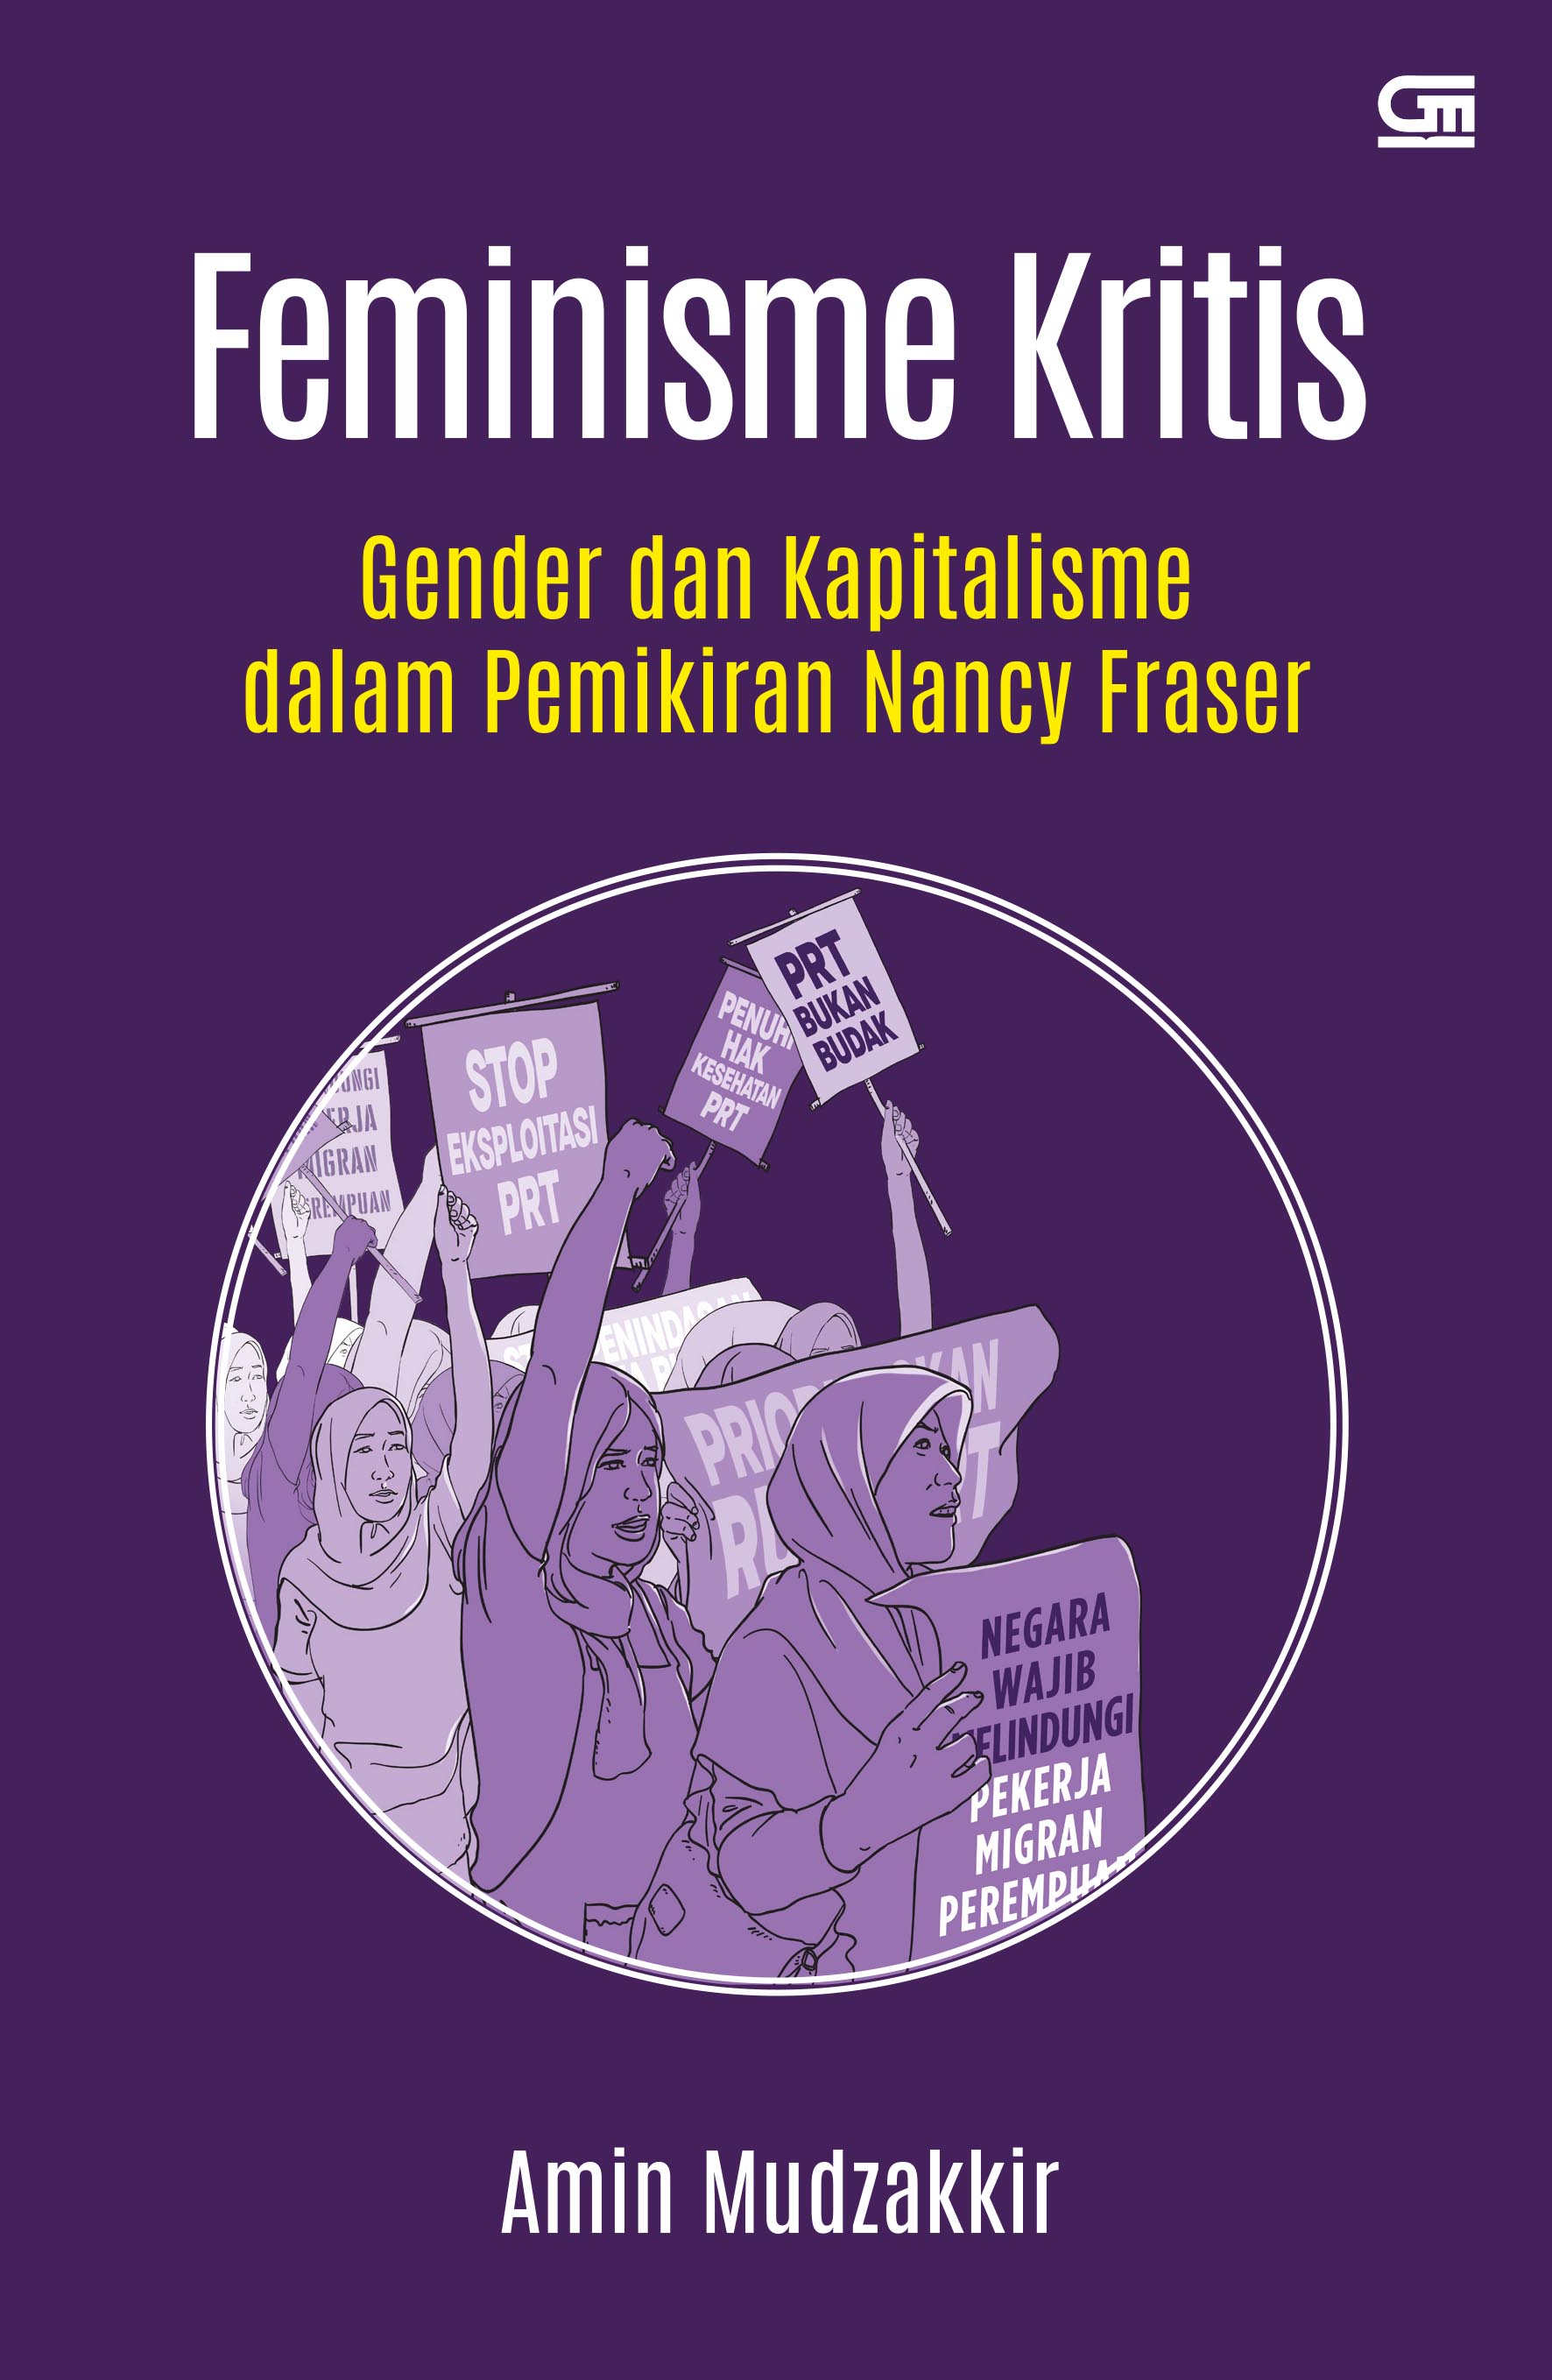 Feminisme Kritis: Gender dan Kapitalisme dalam Pemikiran Nancy Fraser